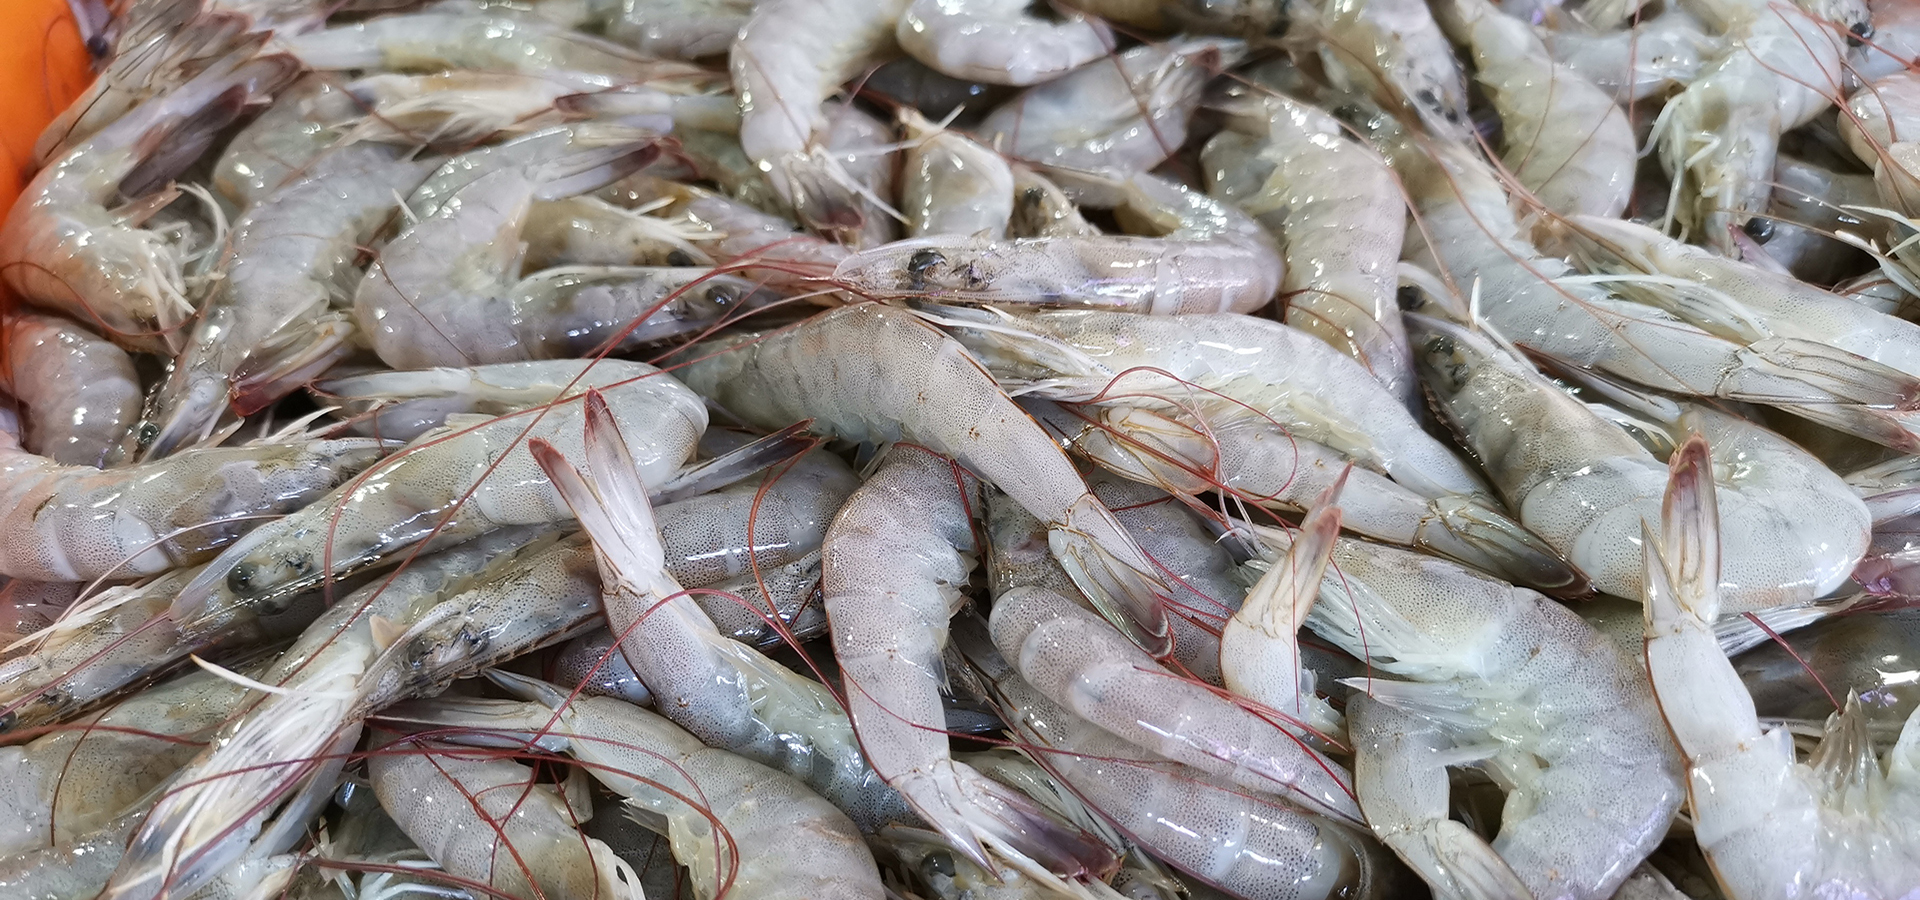 Shrimp manufacturers in India